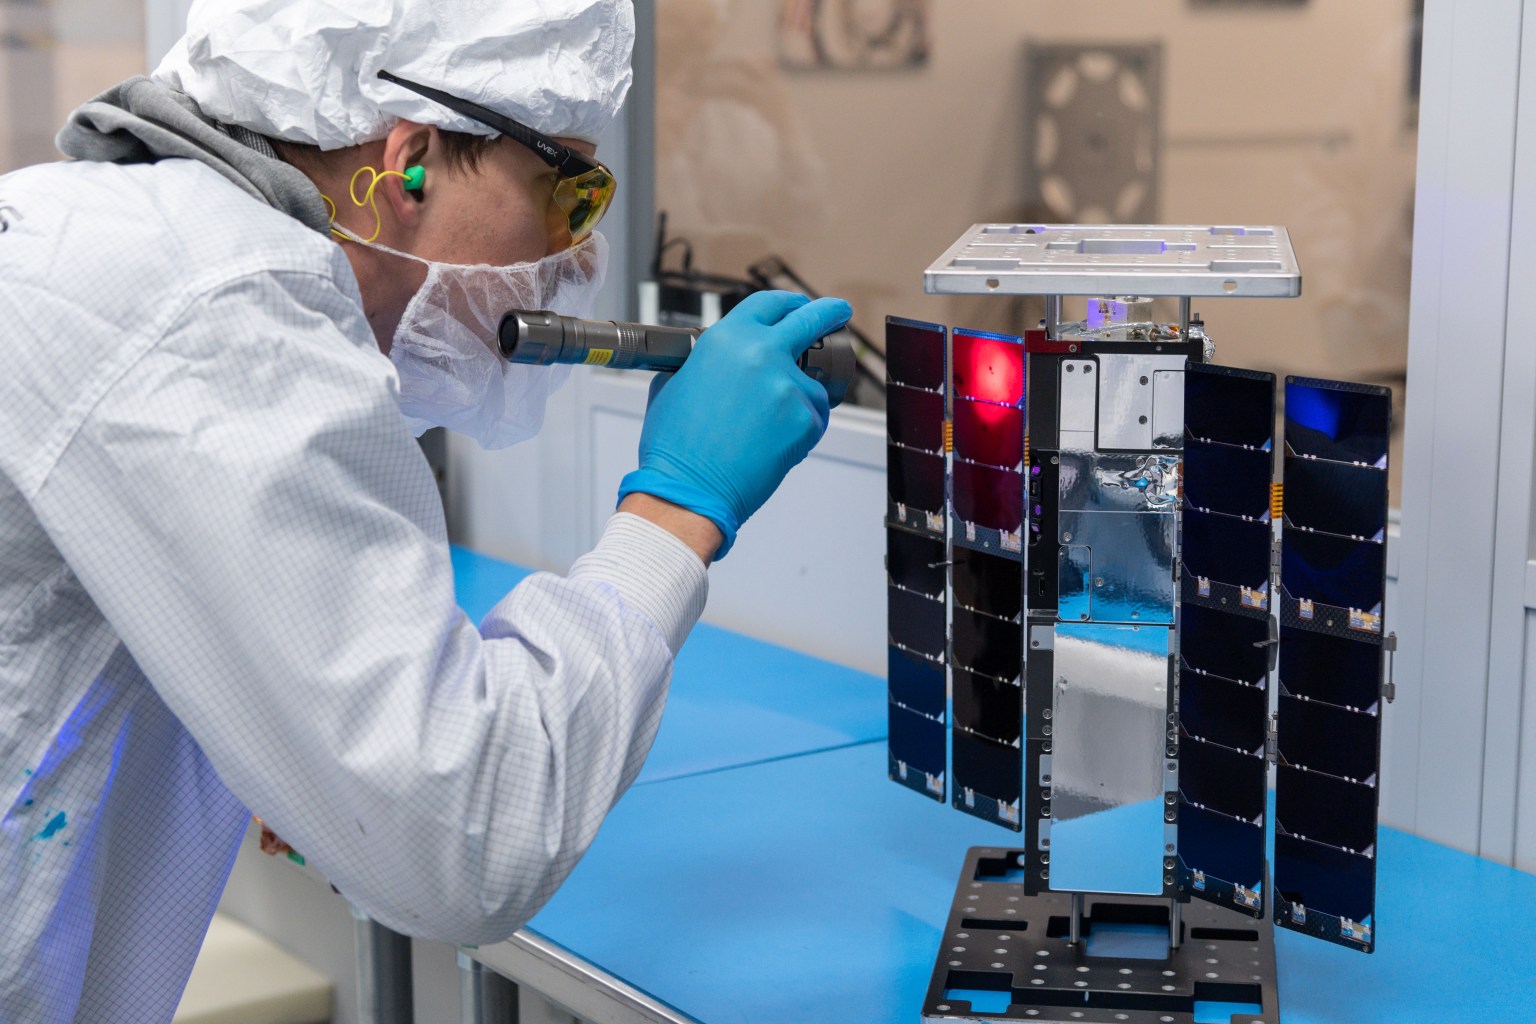 CubeSat unit solar panel inspection